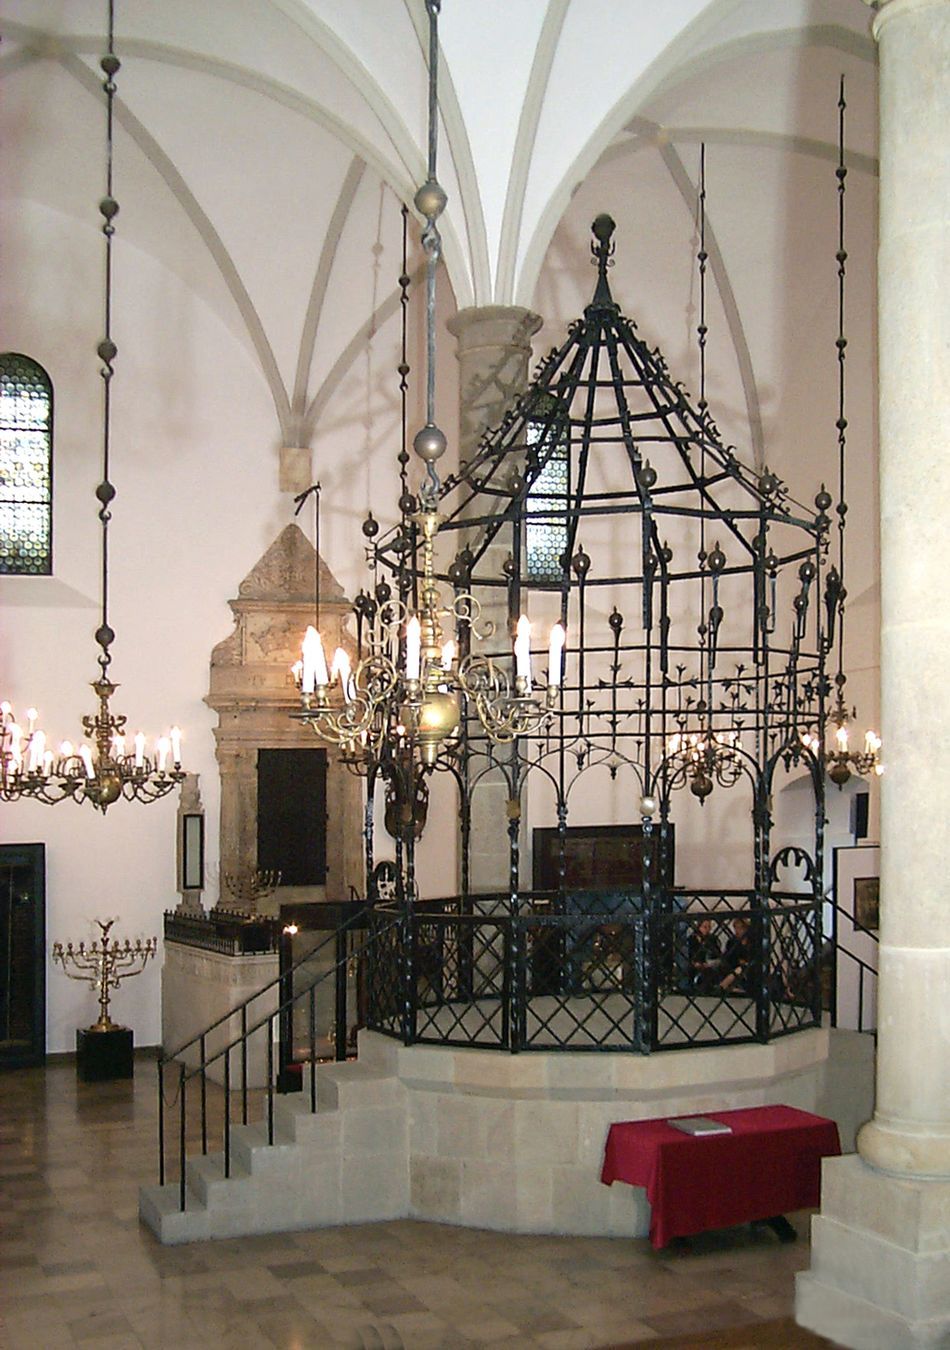 Wnętrze Starej Synagogi na krakowskim Kazimierzu, oddział Muzeum Historycznego Miasta Krakowa